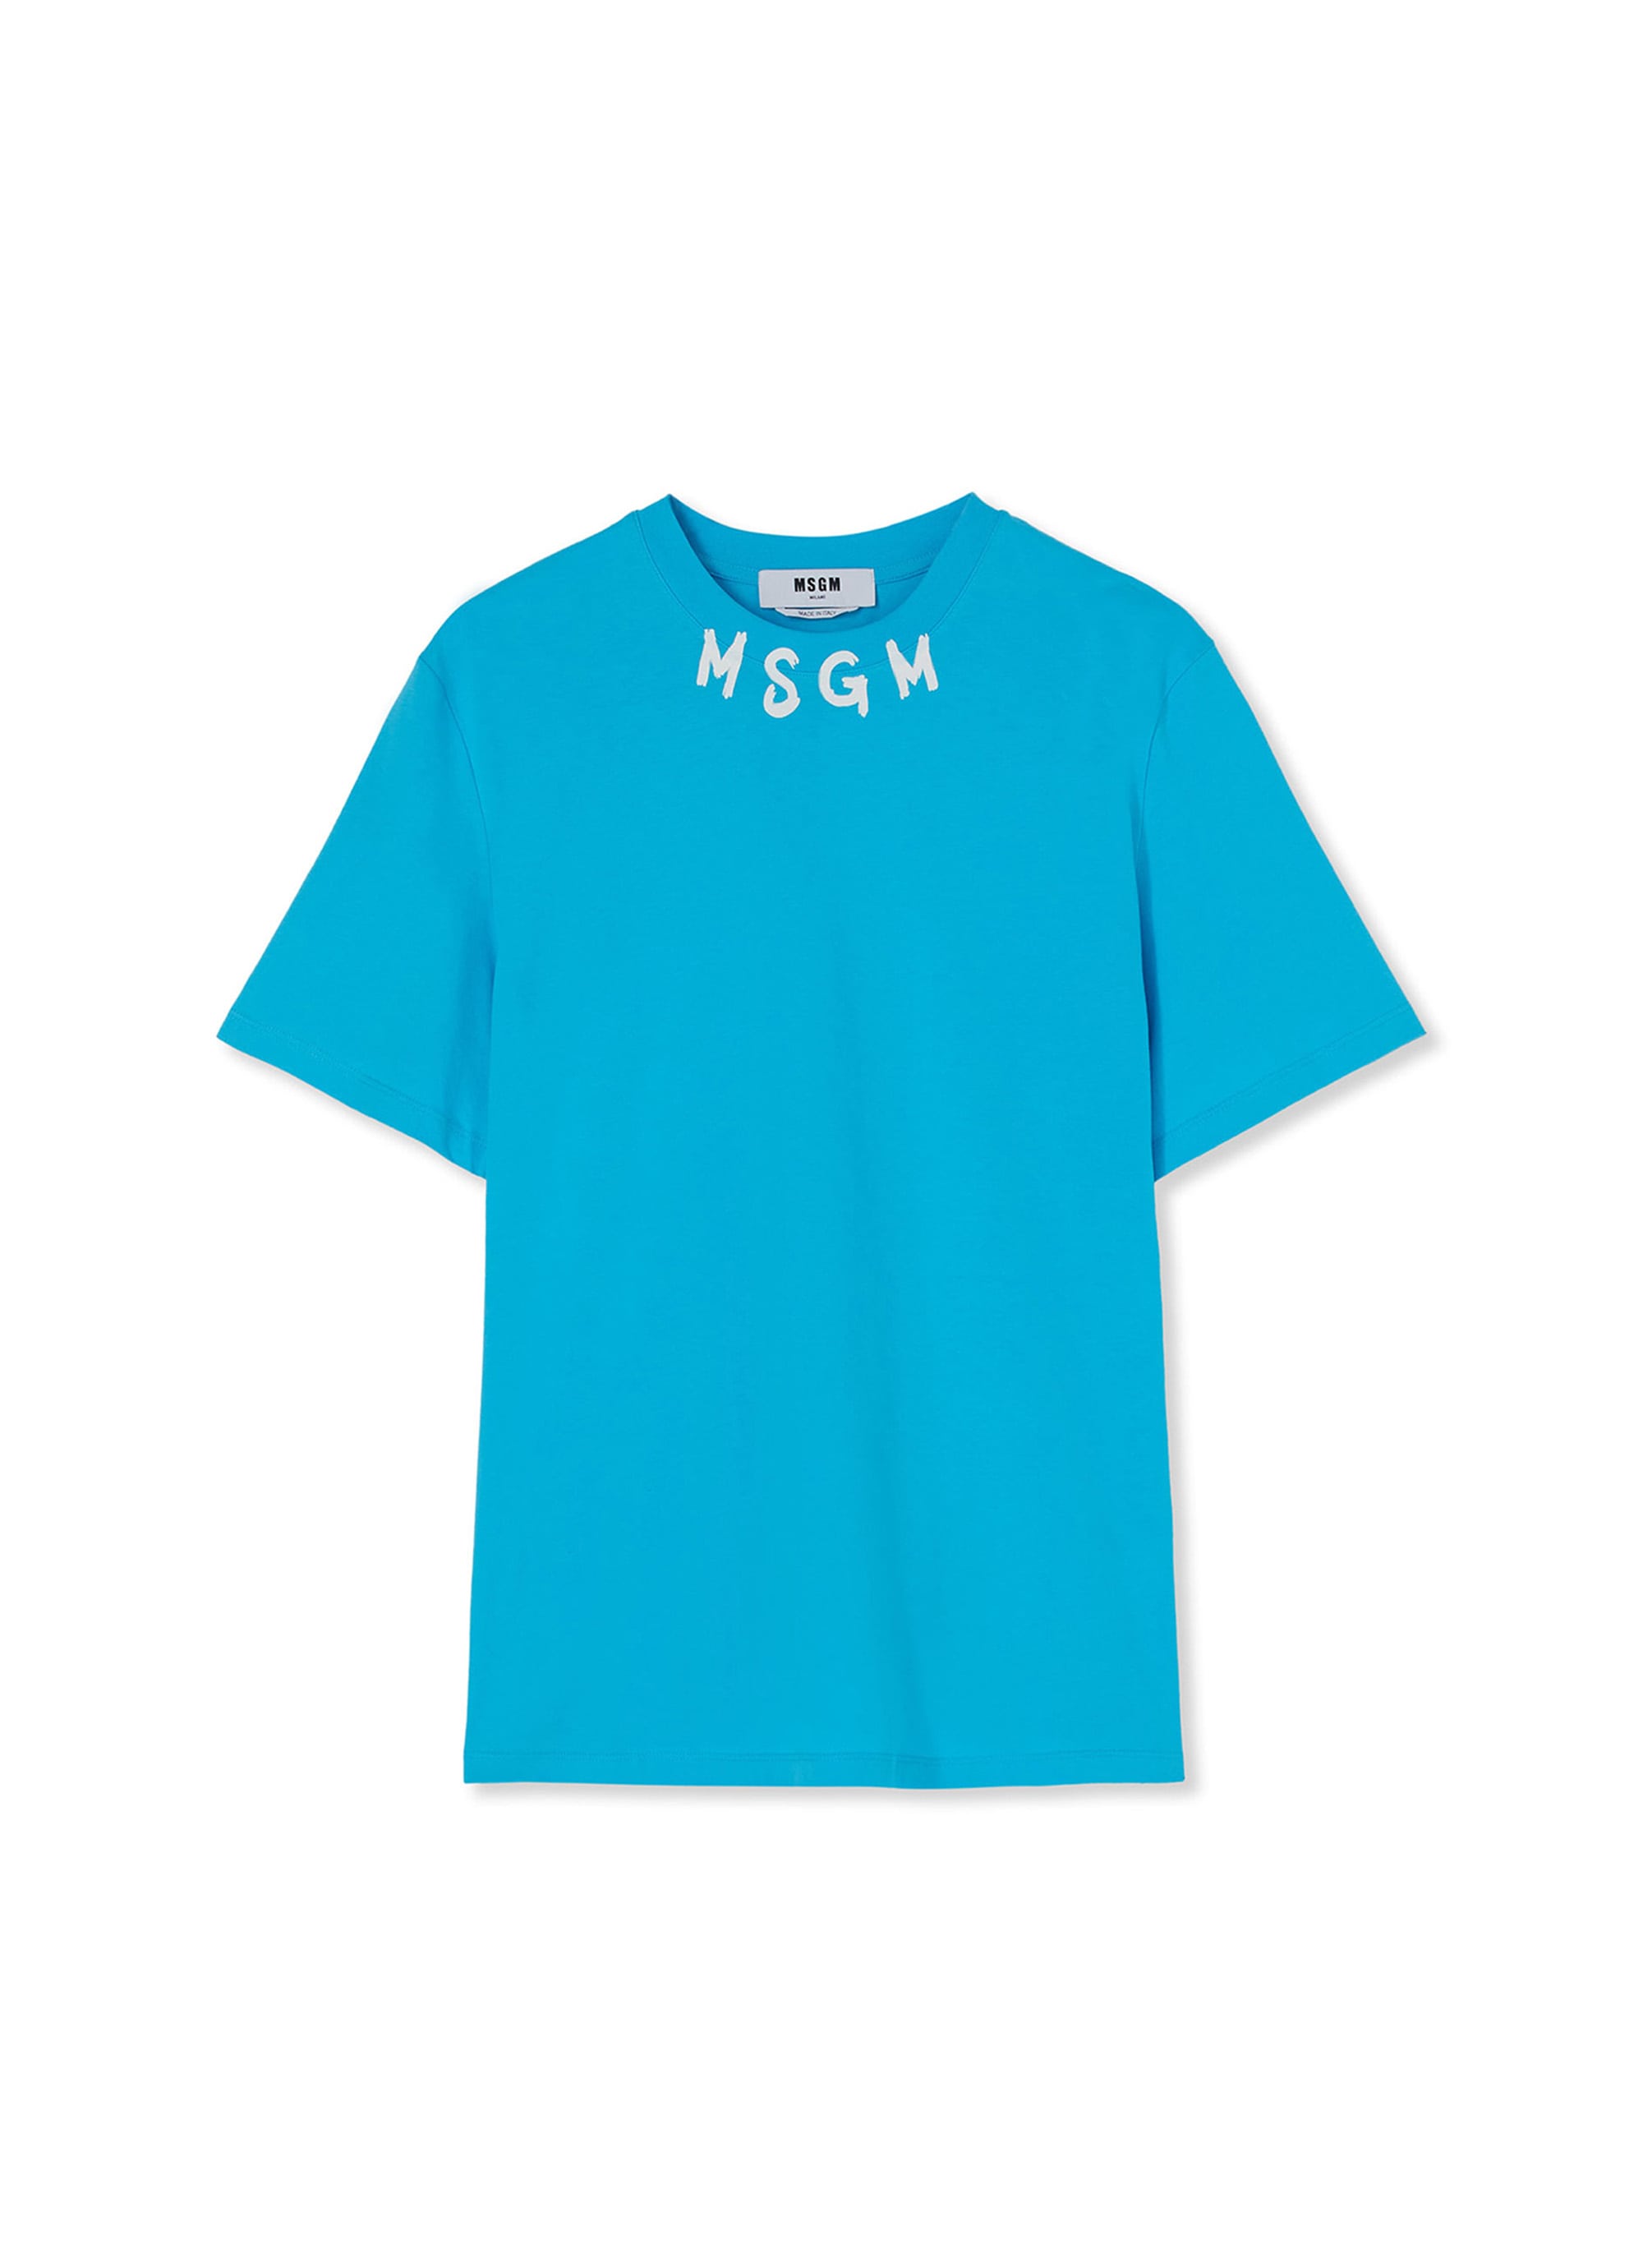 MSGM NEWブラッシュストロークロゴTシャツ 詳細画像 ライトブルー 1